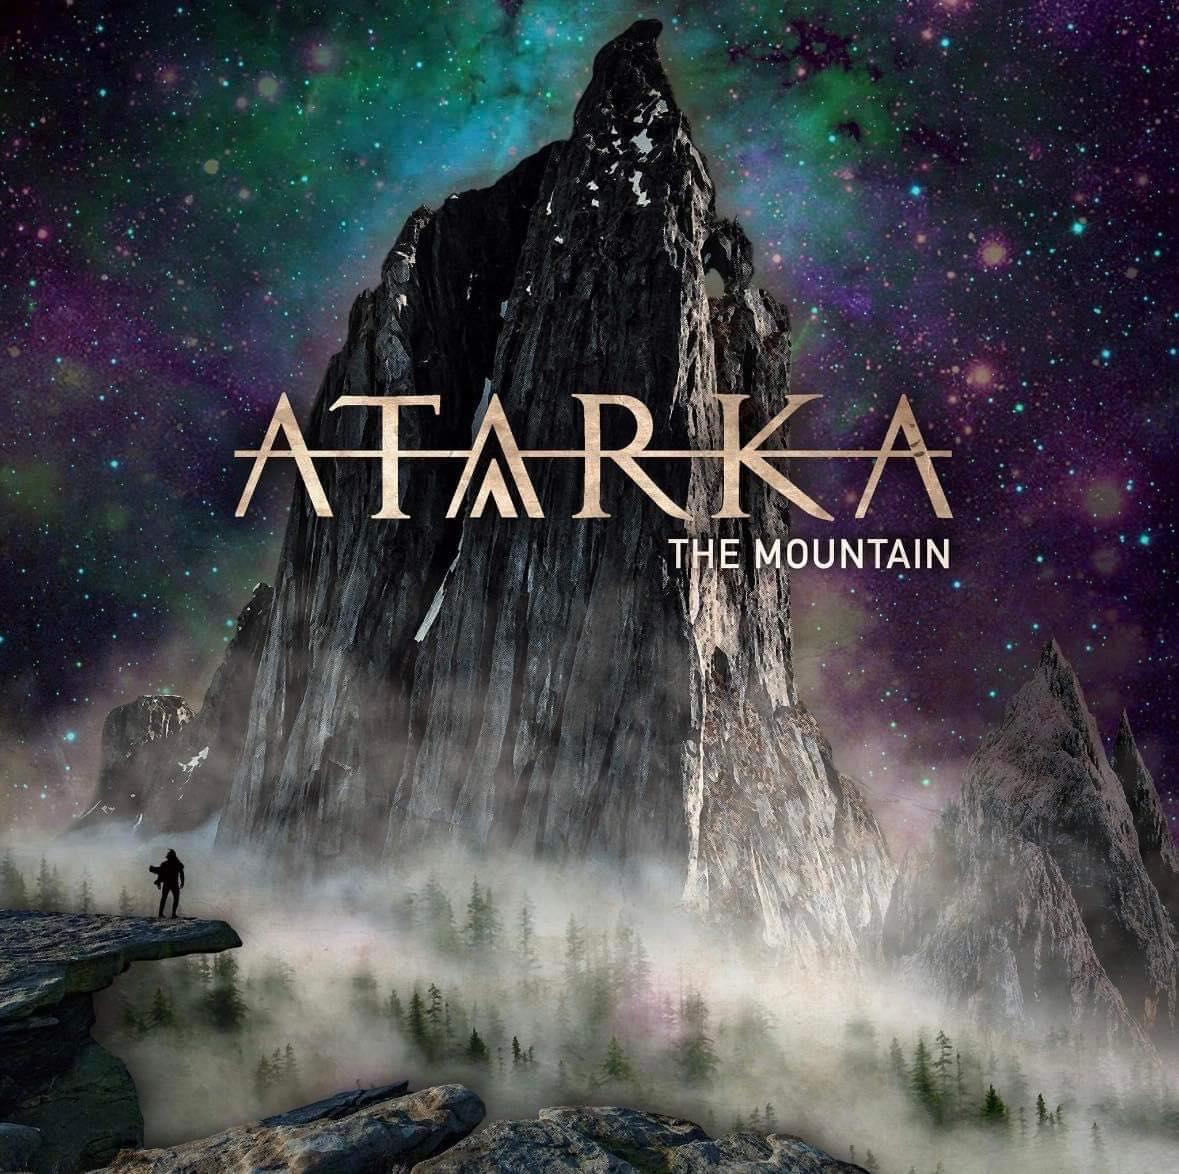 Atarka “The Mountain” EP Artwork